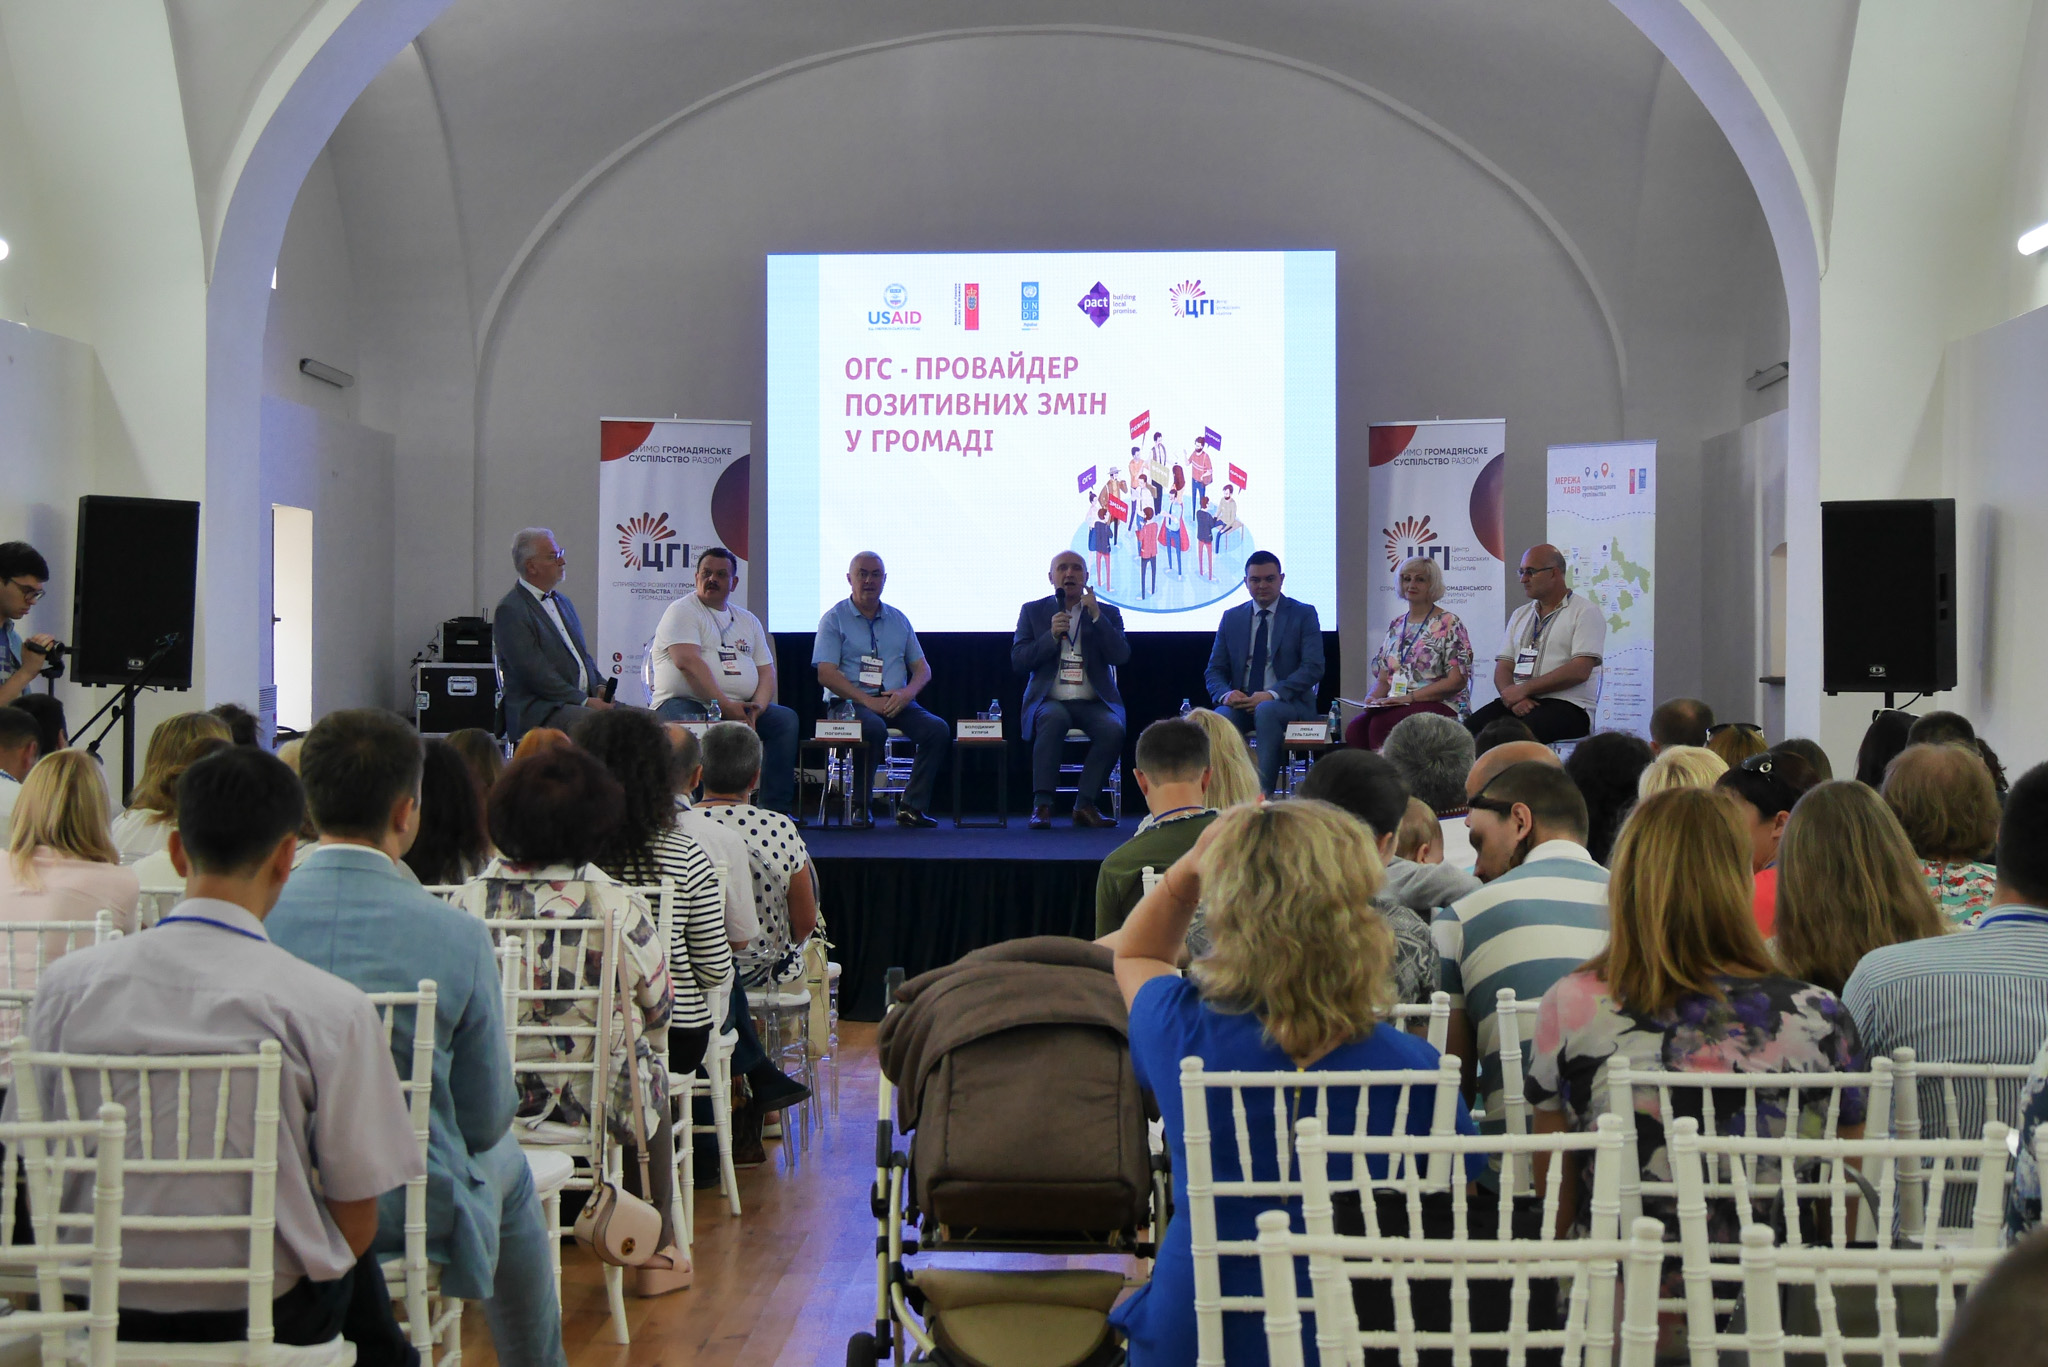 В Ужгороді стартував форум «Організації громадянського суспільства (ОГС) – провайдер позитивних змін у громаді»